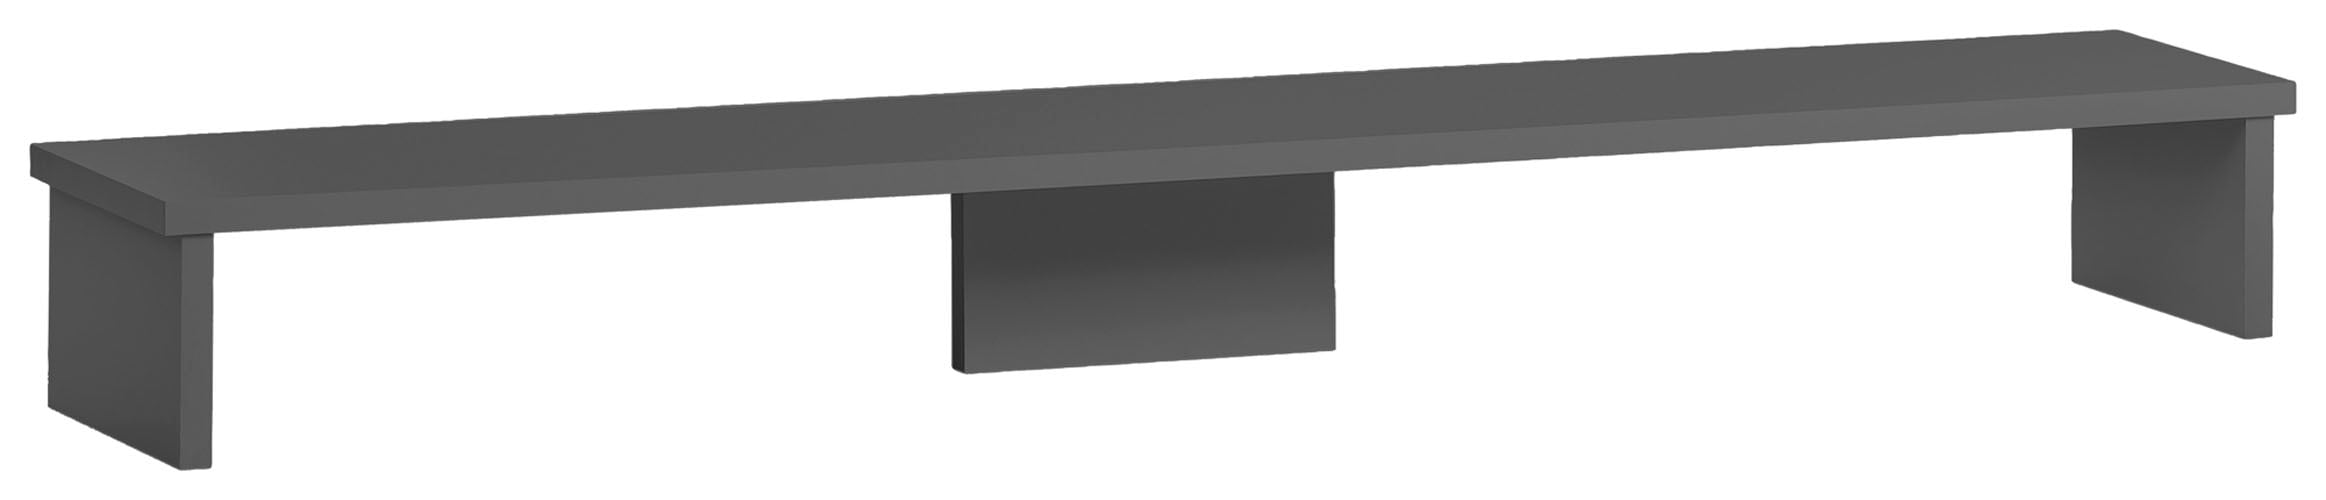 Schreibtischaufsatz »Baku«, Bildschirmaufsatz, Breite 110 cm, Made in Germany